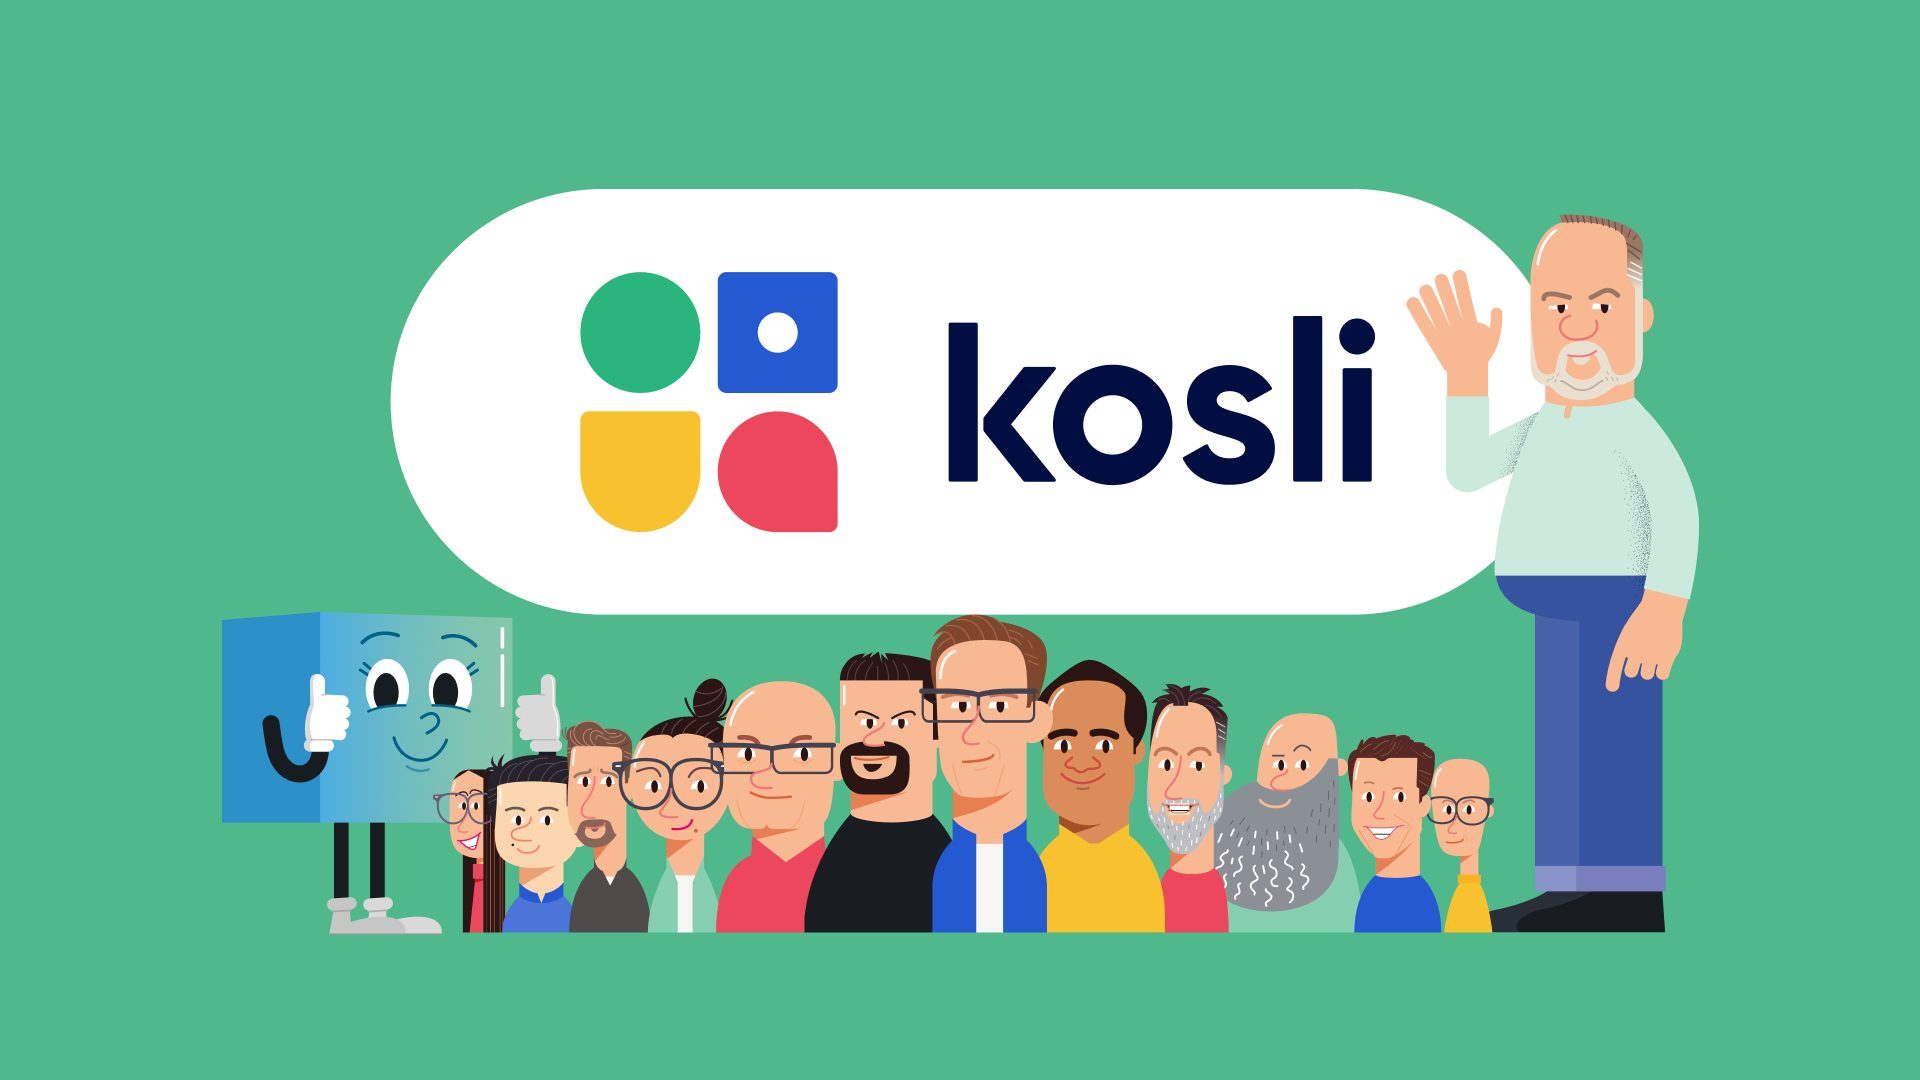 kosli team and arti